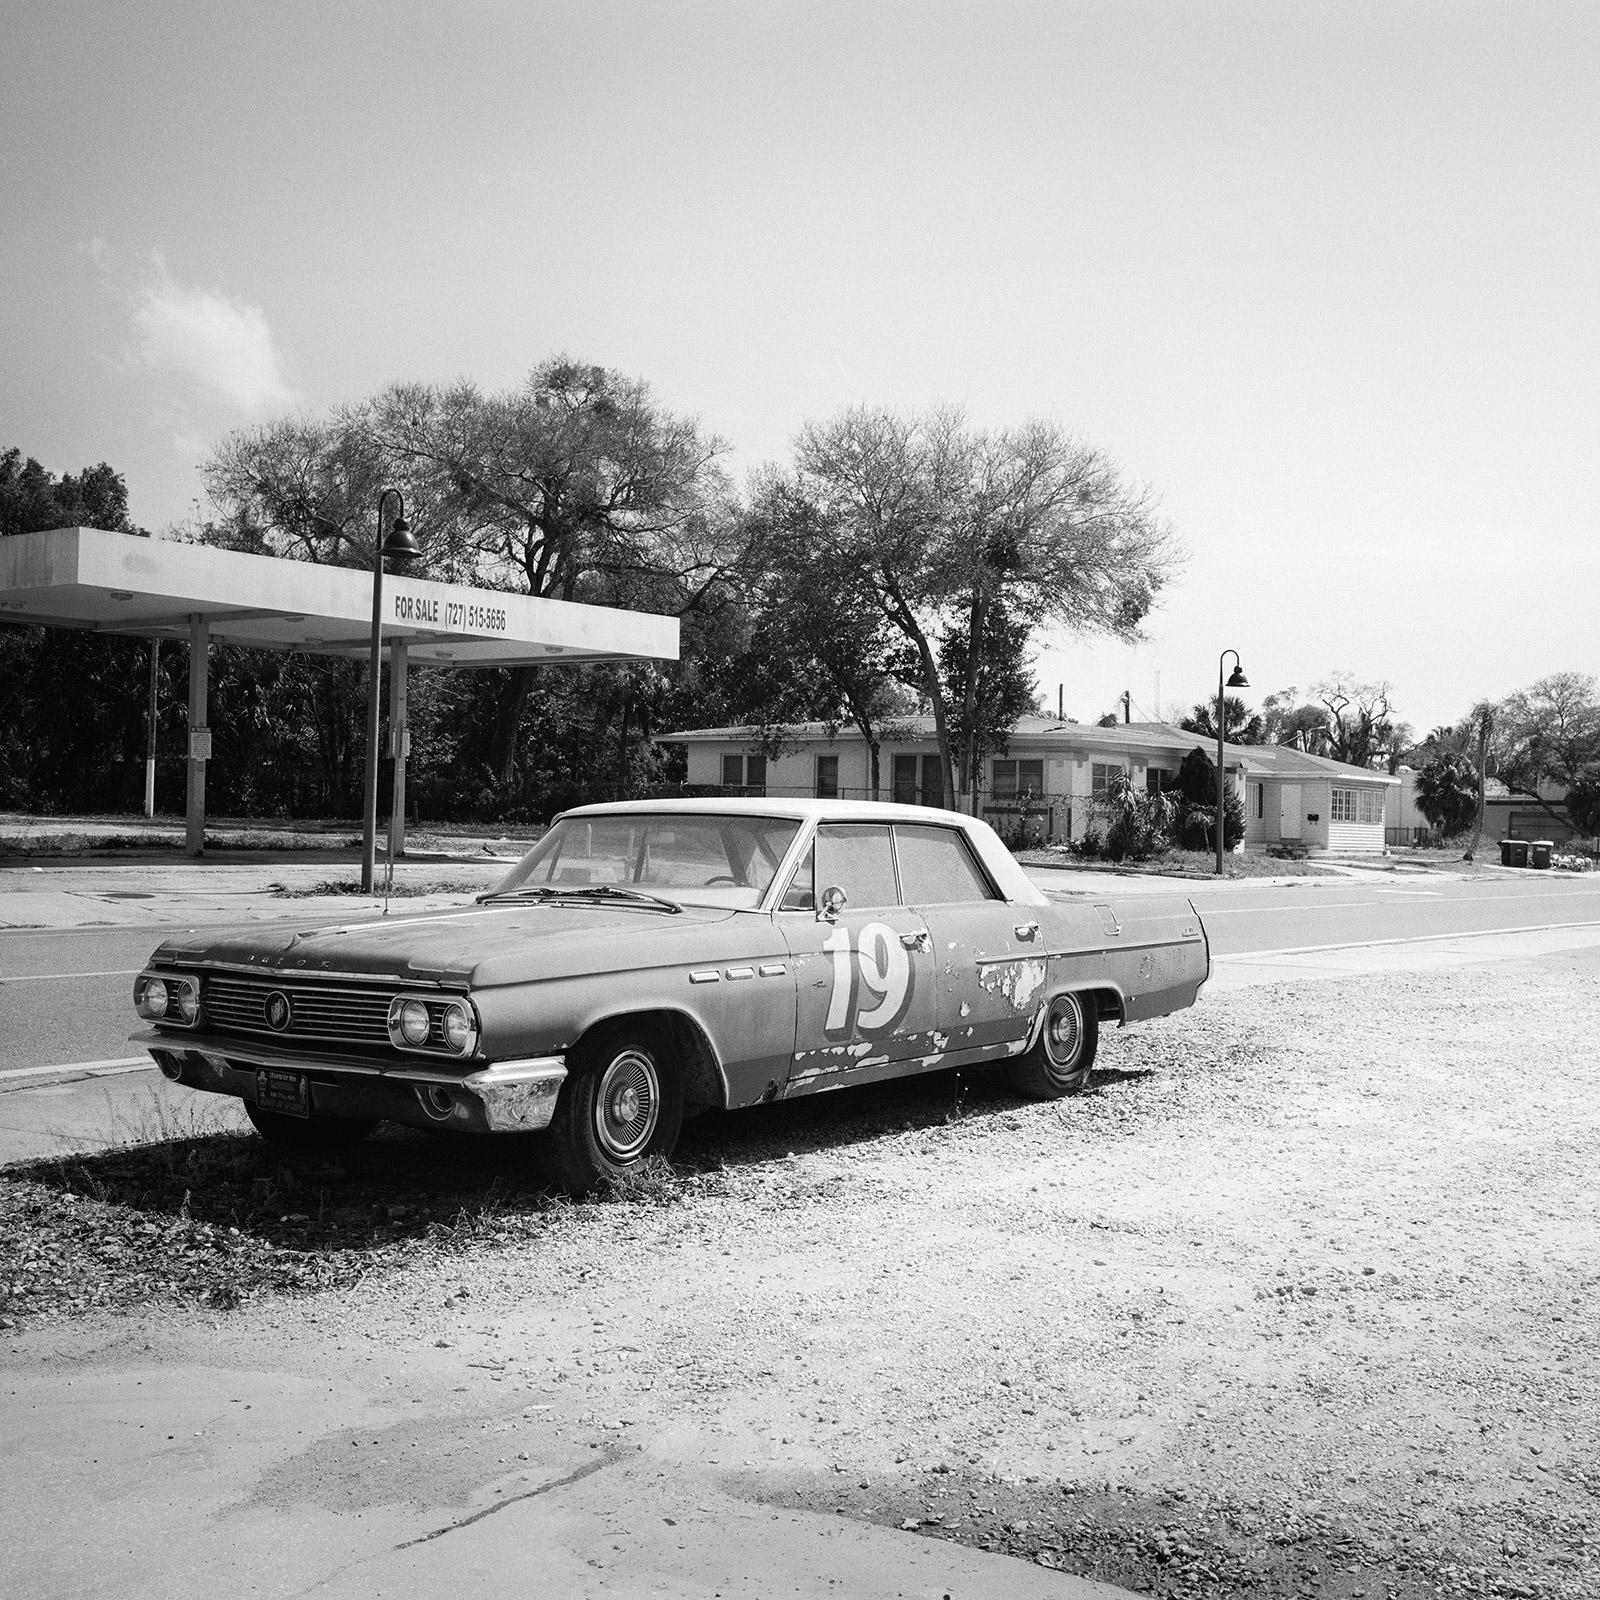 Buick à vendre, voiture classique, Floride, États-Unis, photographies de paysages en noir et blanc